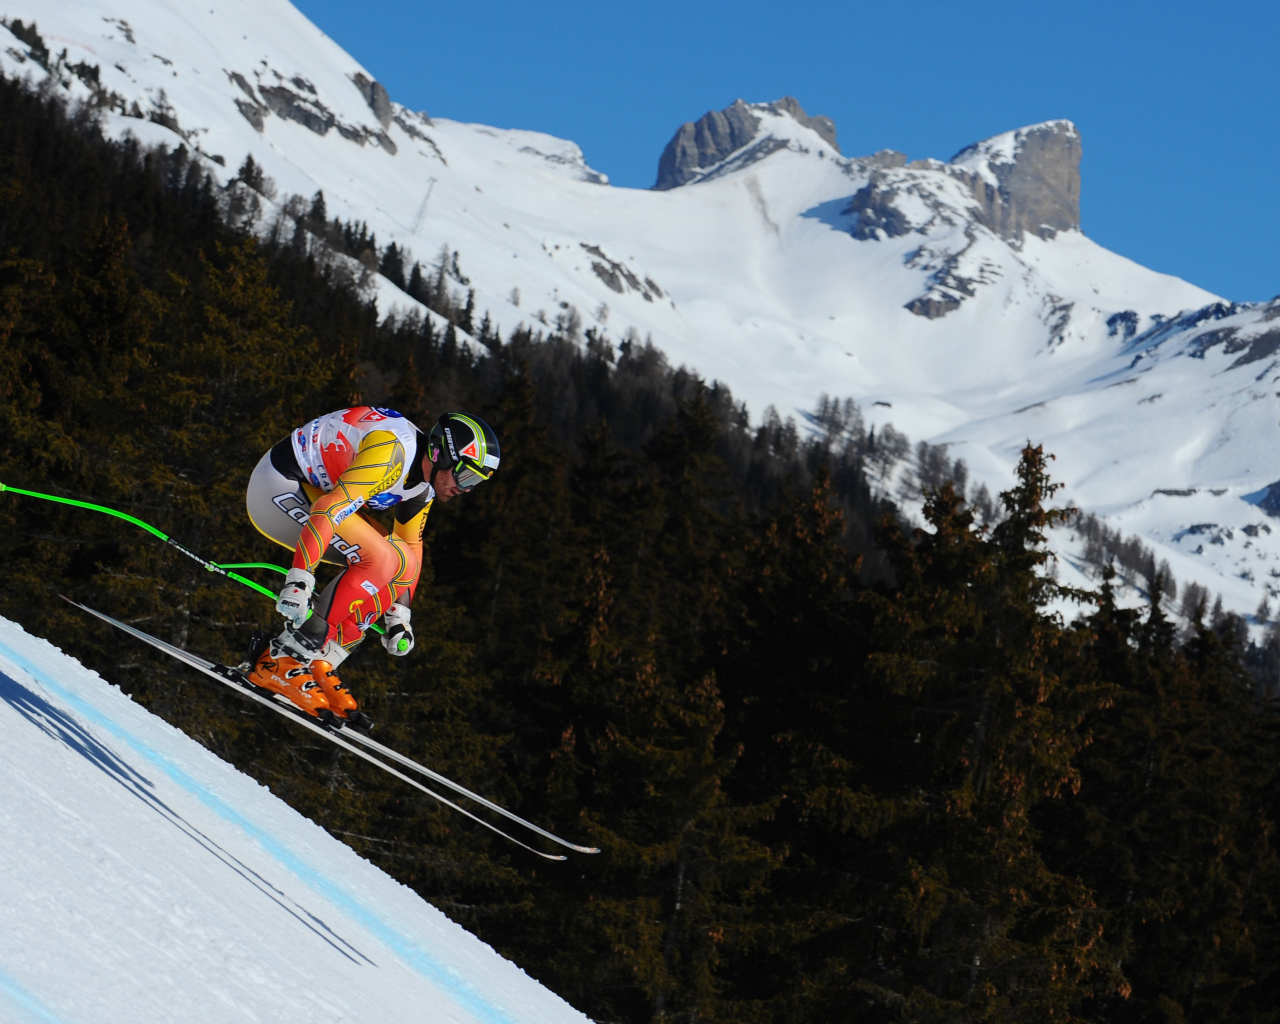 Ян Худек канадский лыжник обладатель бронзовой медали в Сочи